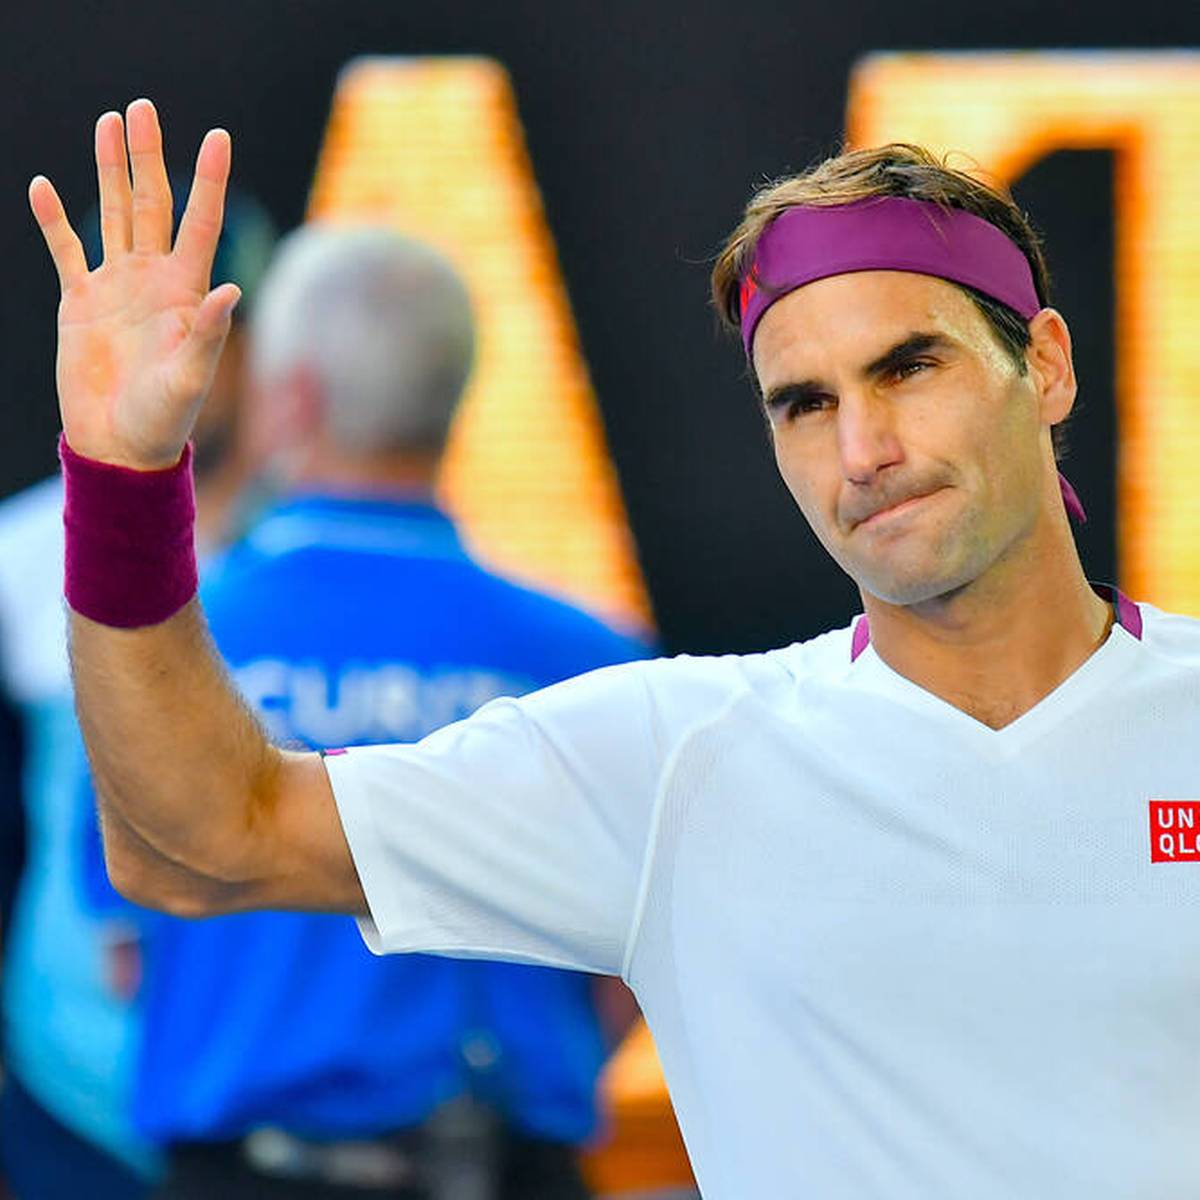 Roger Federer steht vor seinem letzten großen Auftritt, in London nimmt der Maestro Abschied - ausgerechnet an der Seite von Rafael Nadal.